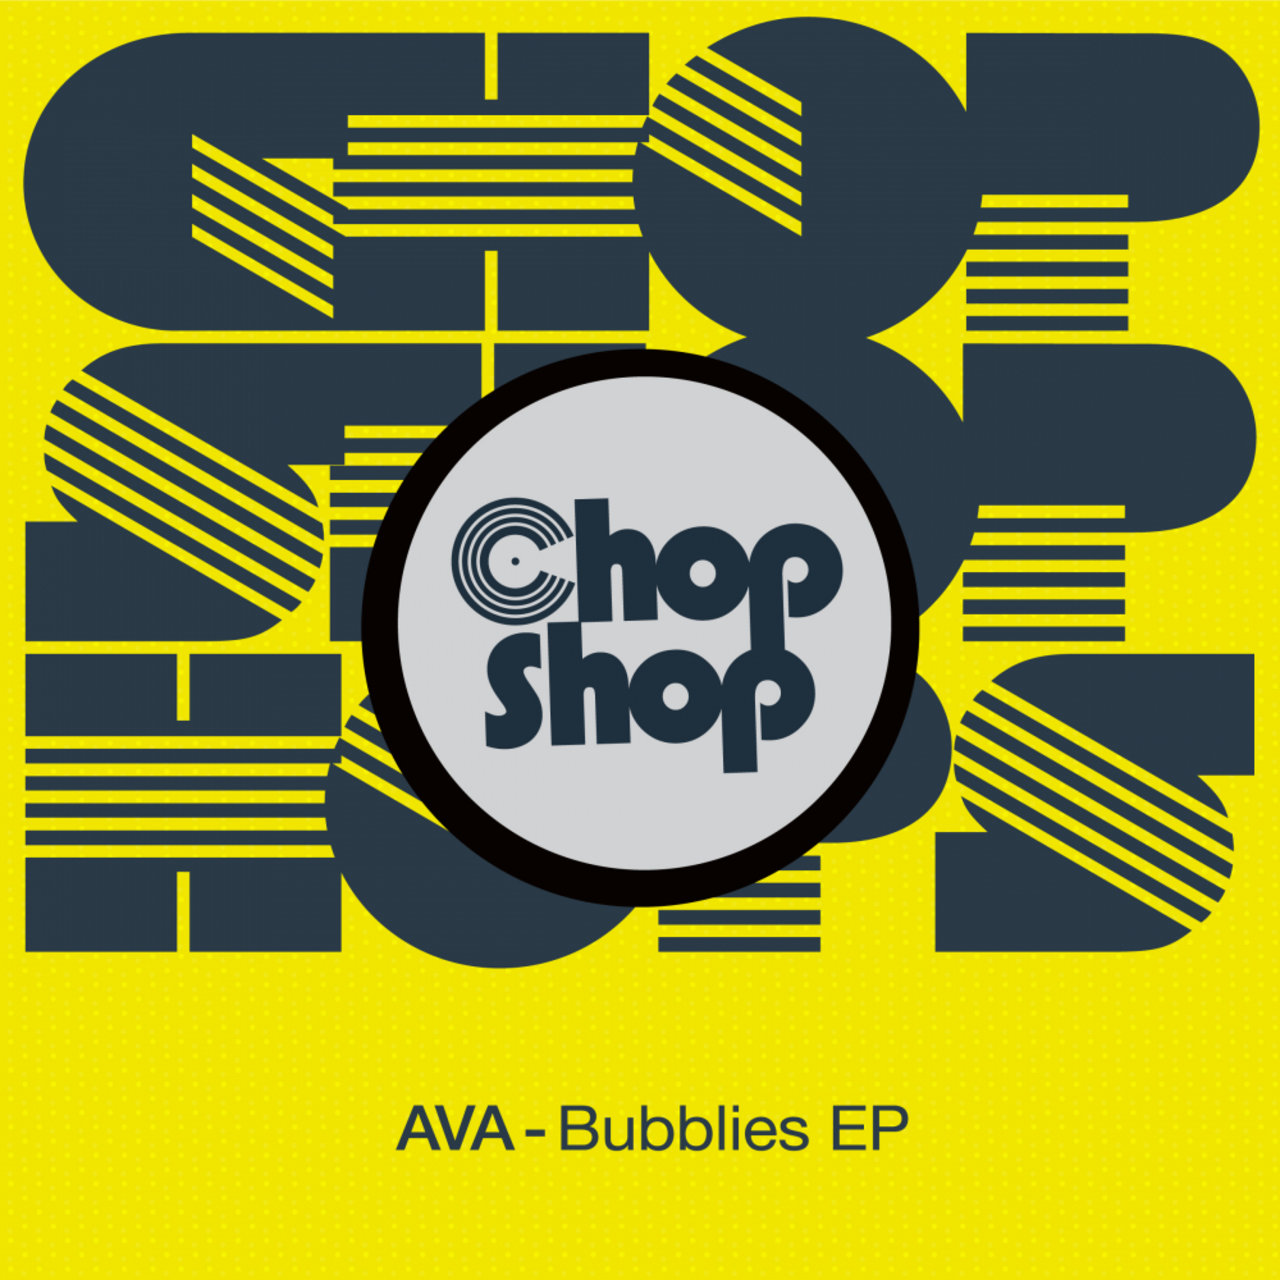 AVA (It) - Bubblies EP / Chopshop Music